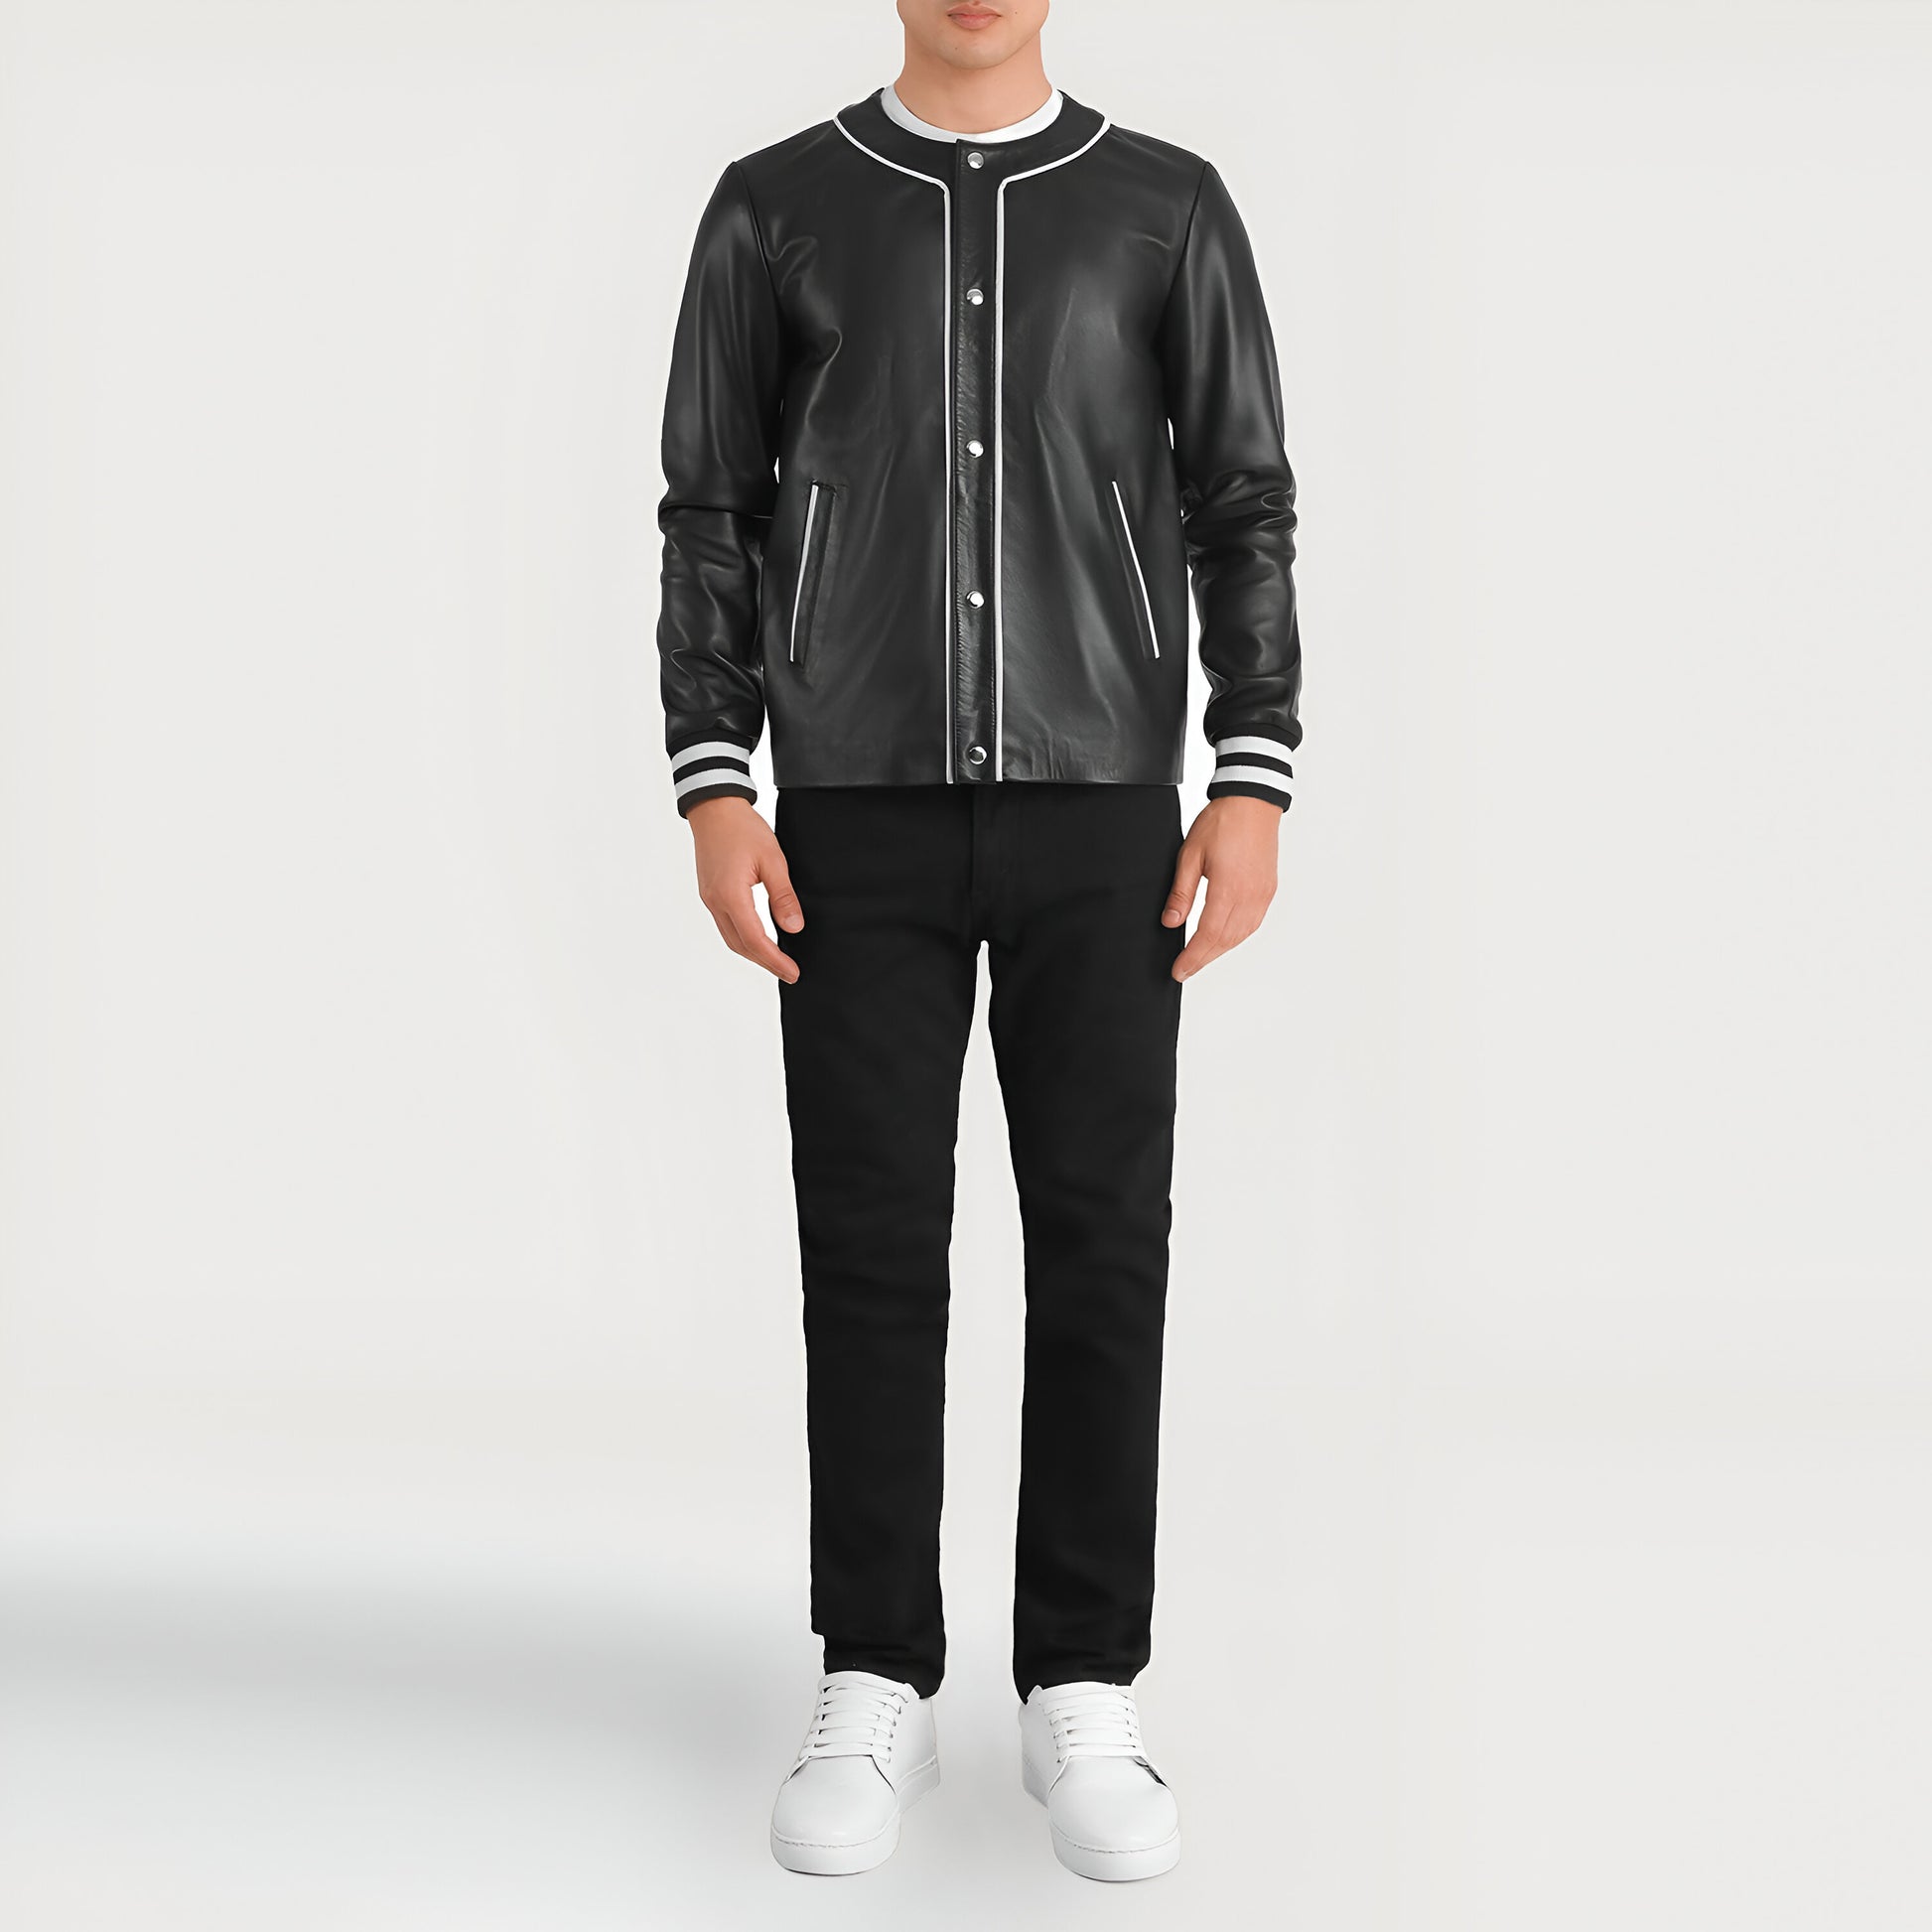 Mariano Rivera Black Leather Varsity Jacket